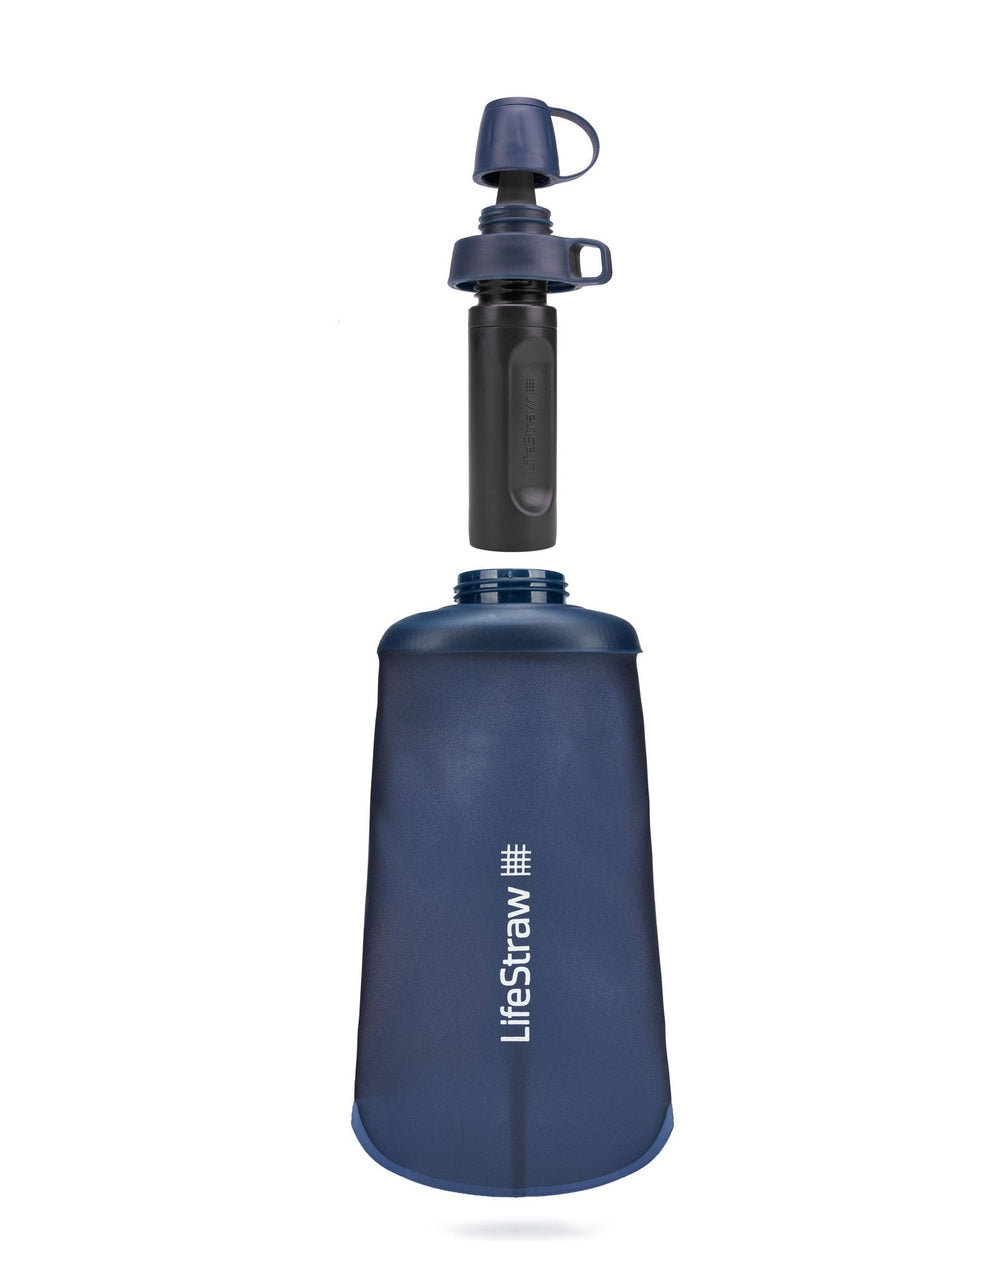 LifeStraw Système de filtre à bouteille d'eau pliable Peak Series - 1L